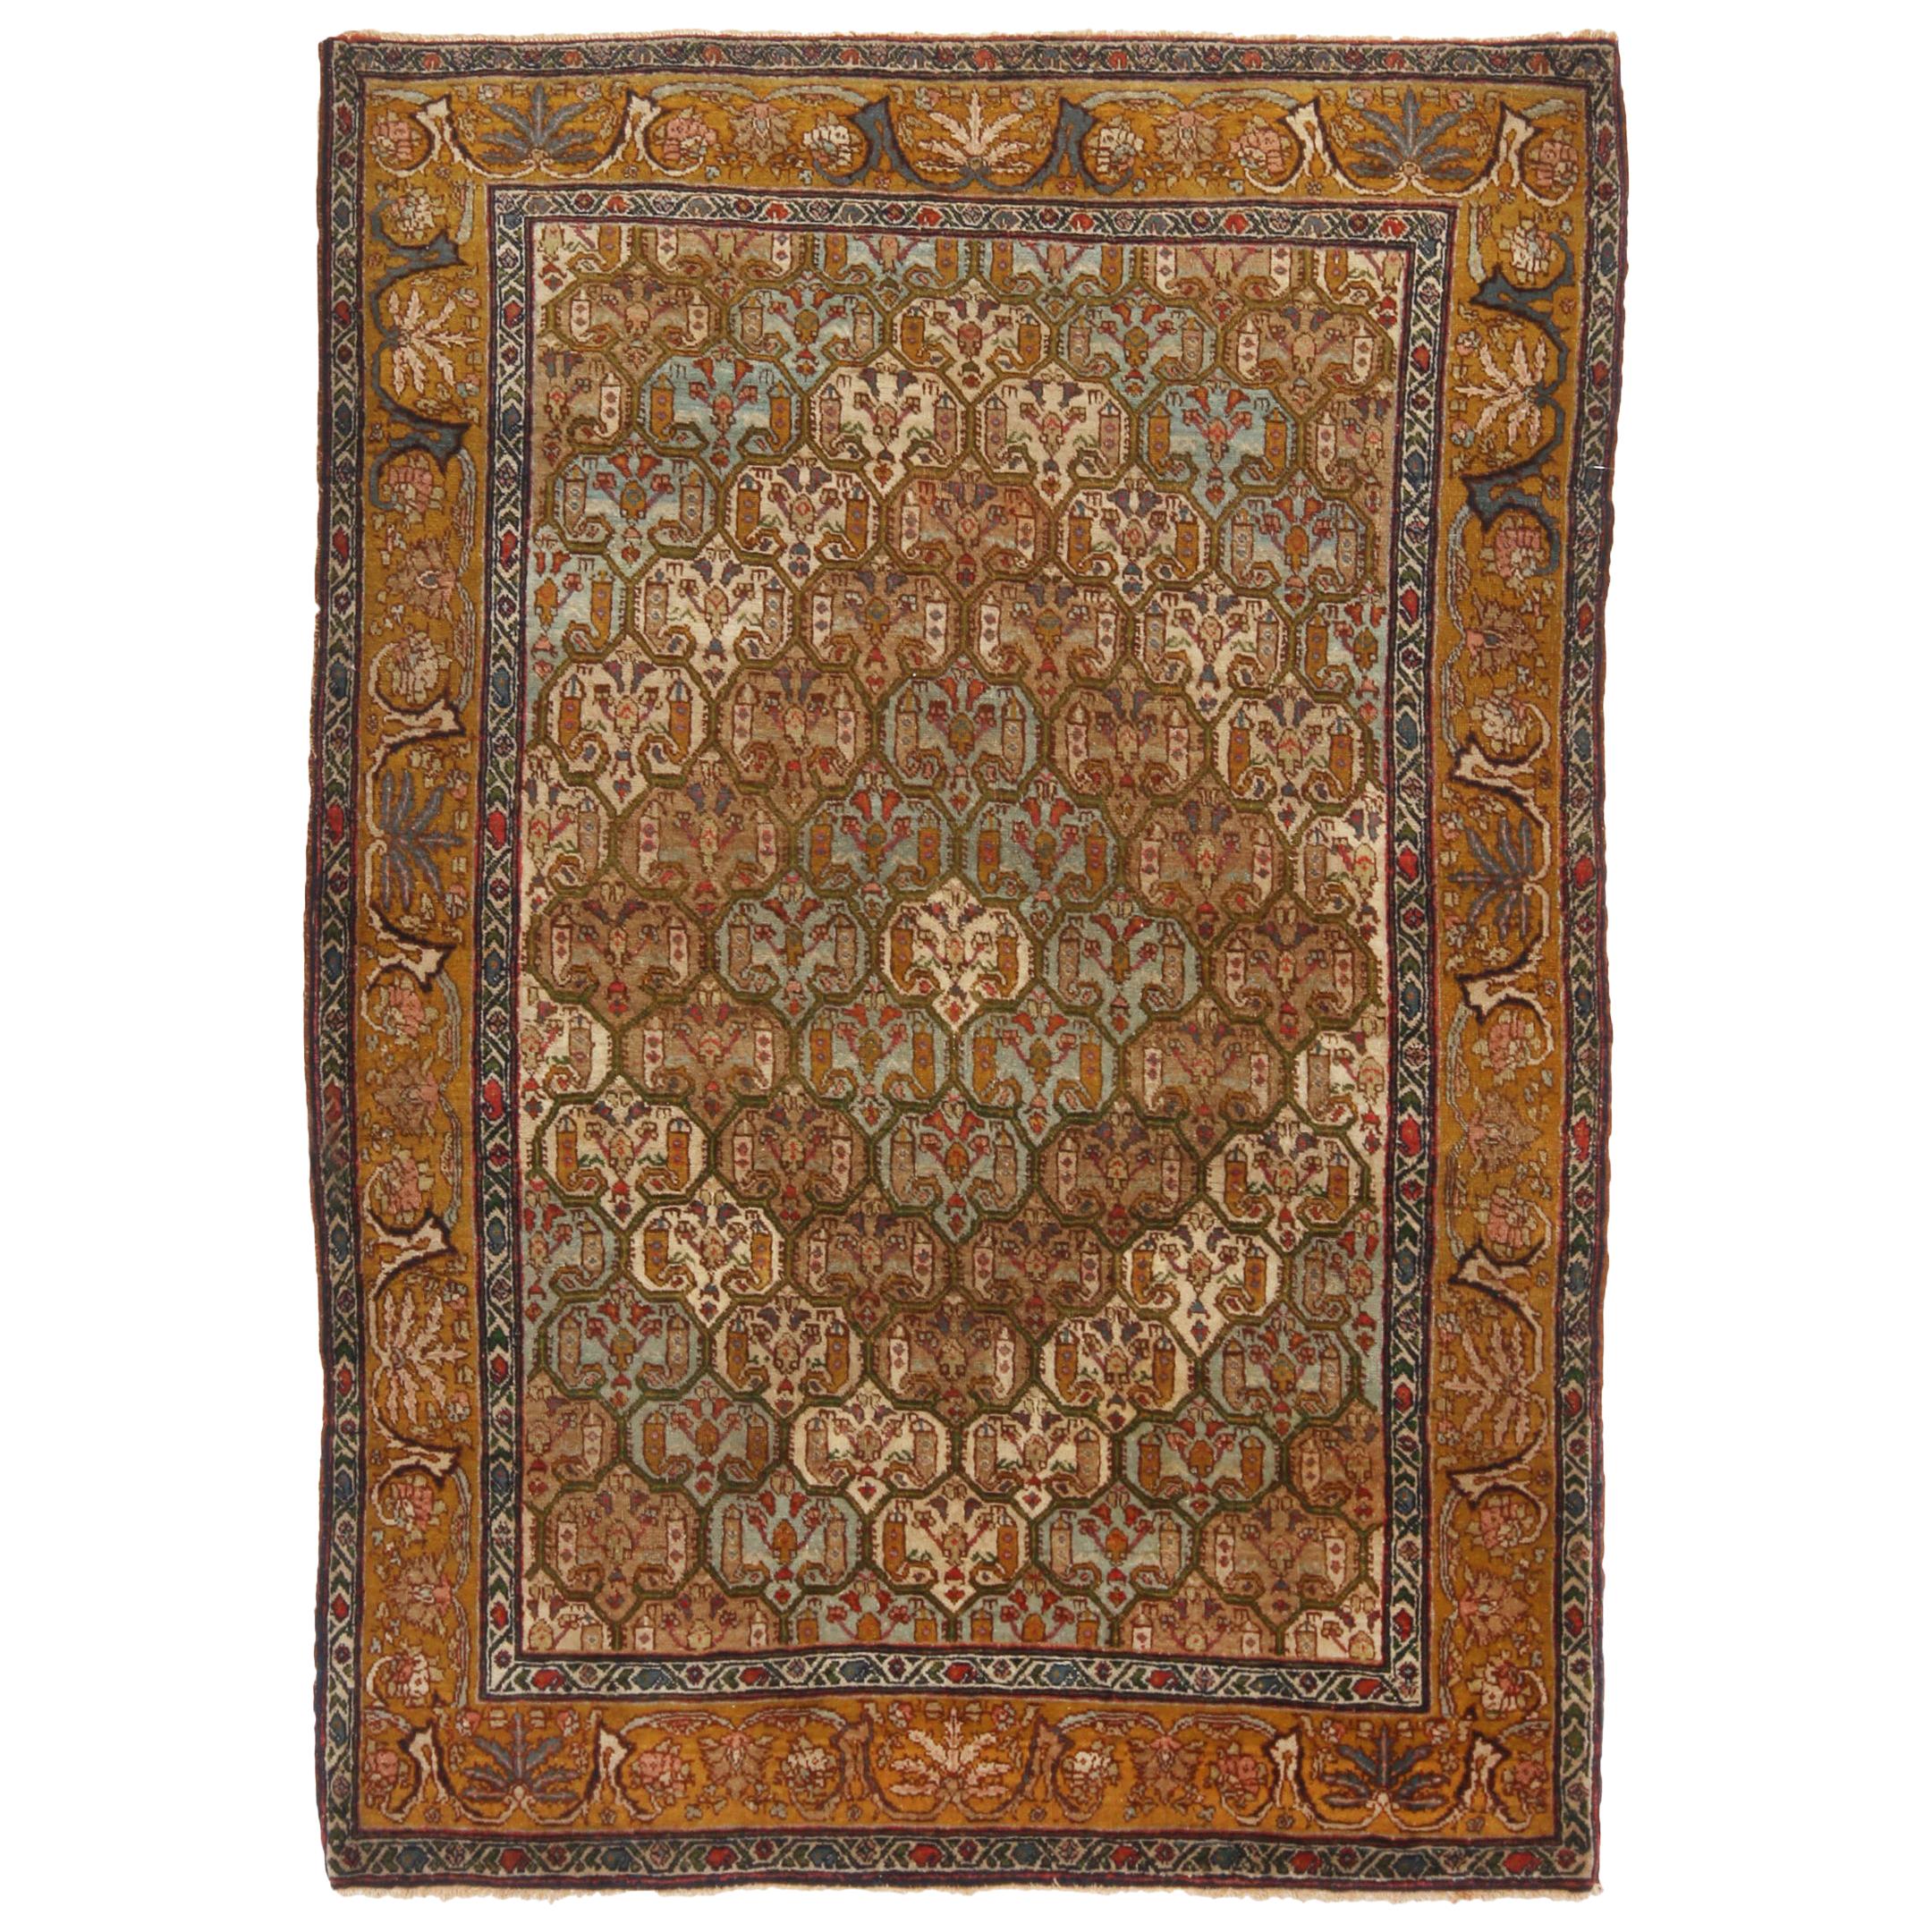 Antique Jerusalem Blue and Copper Brown Wool Floral Rug by Rug & Kilim For Sale